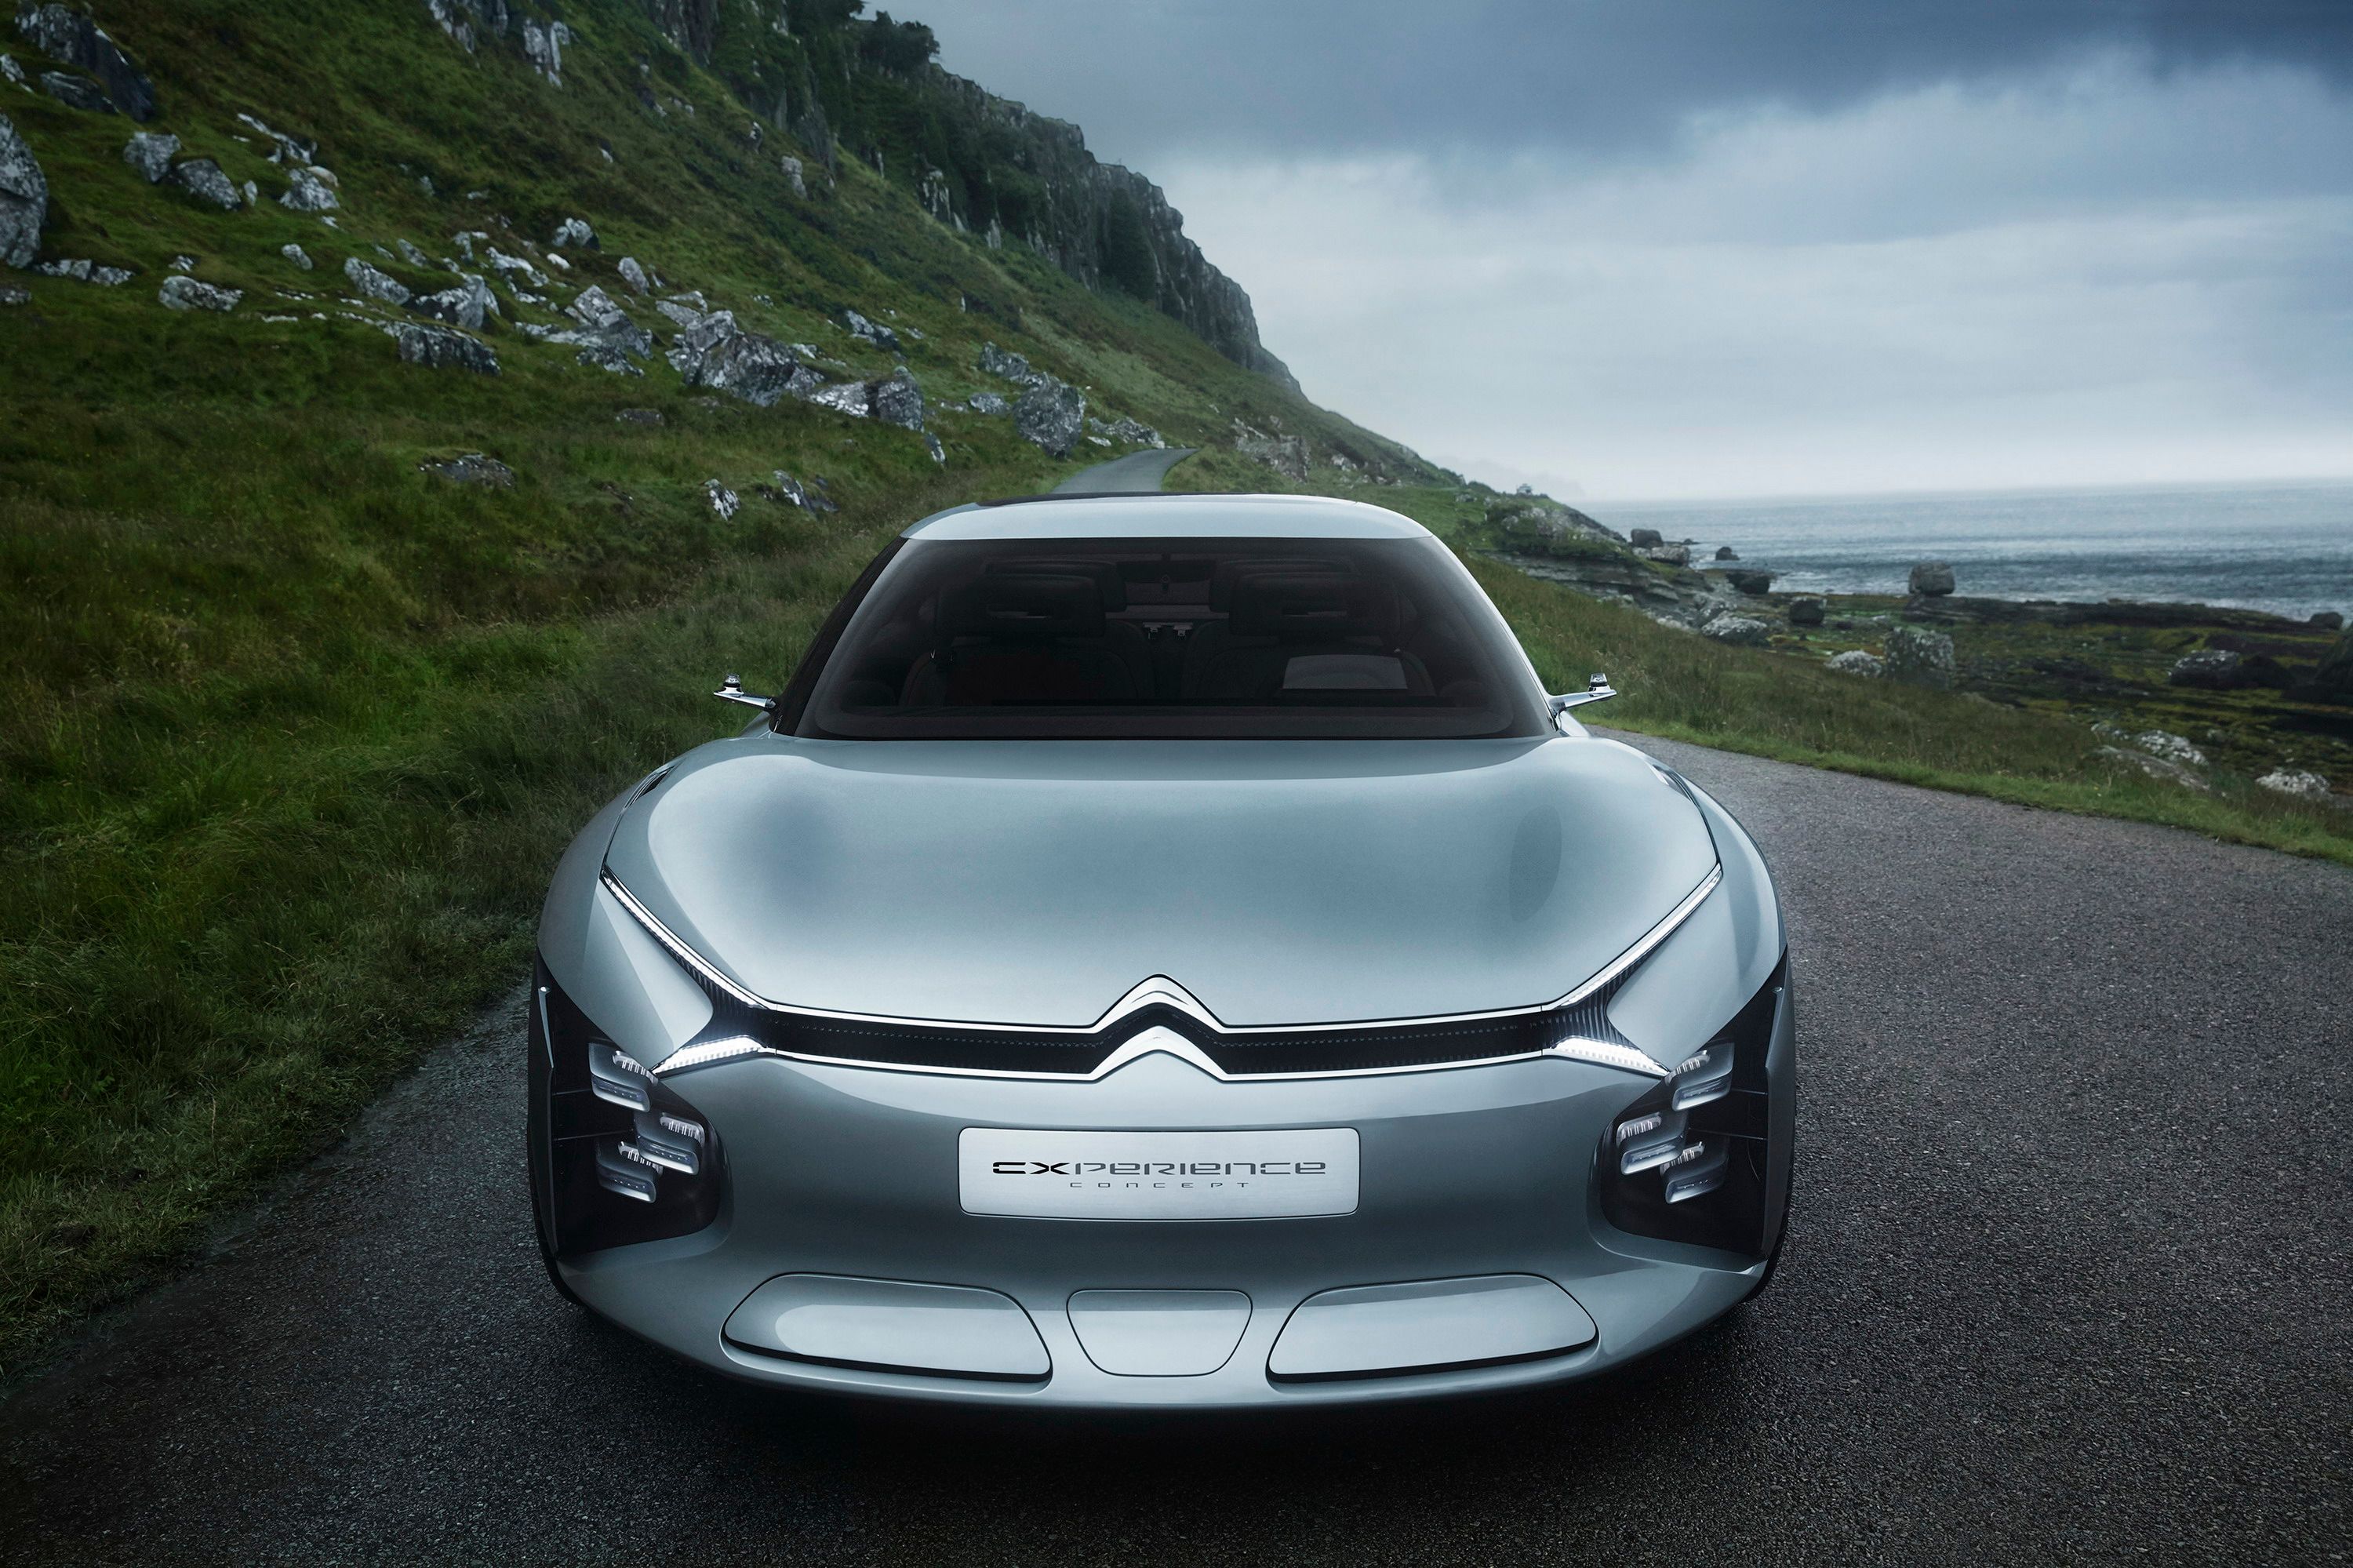 2016 Citroën Cxperience